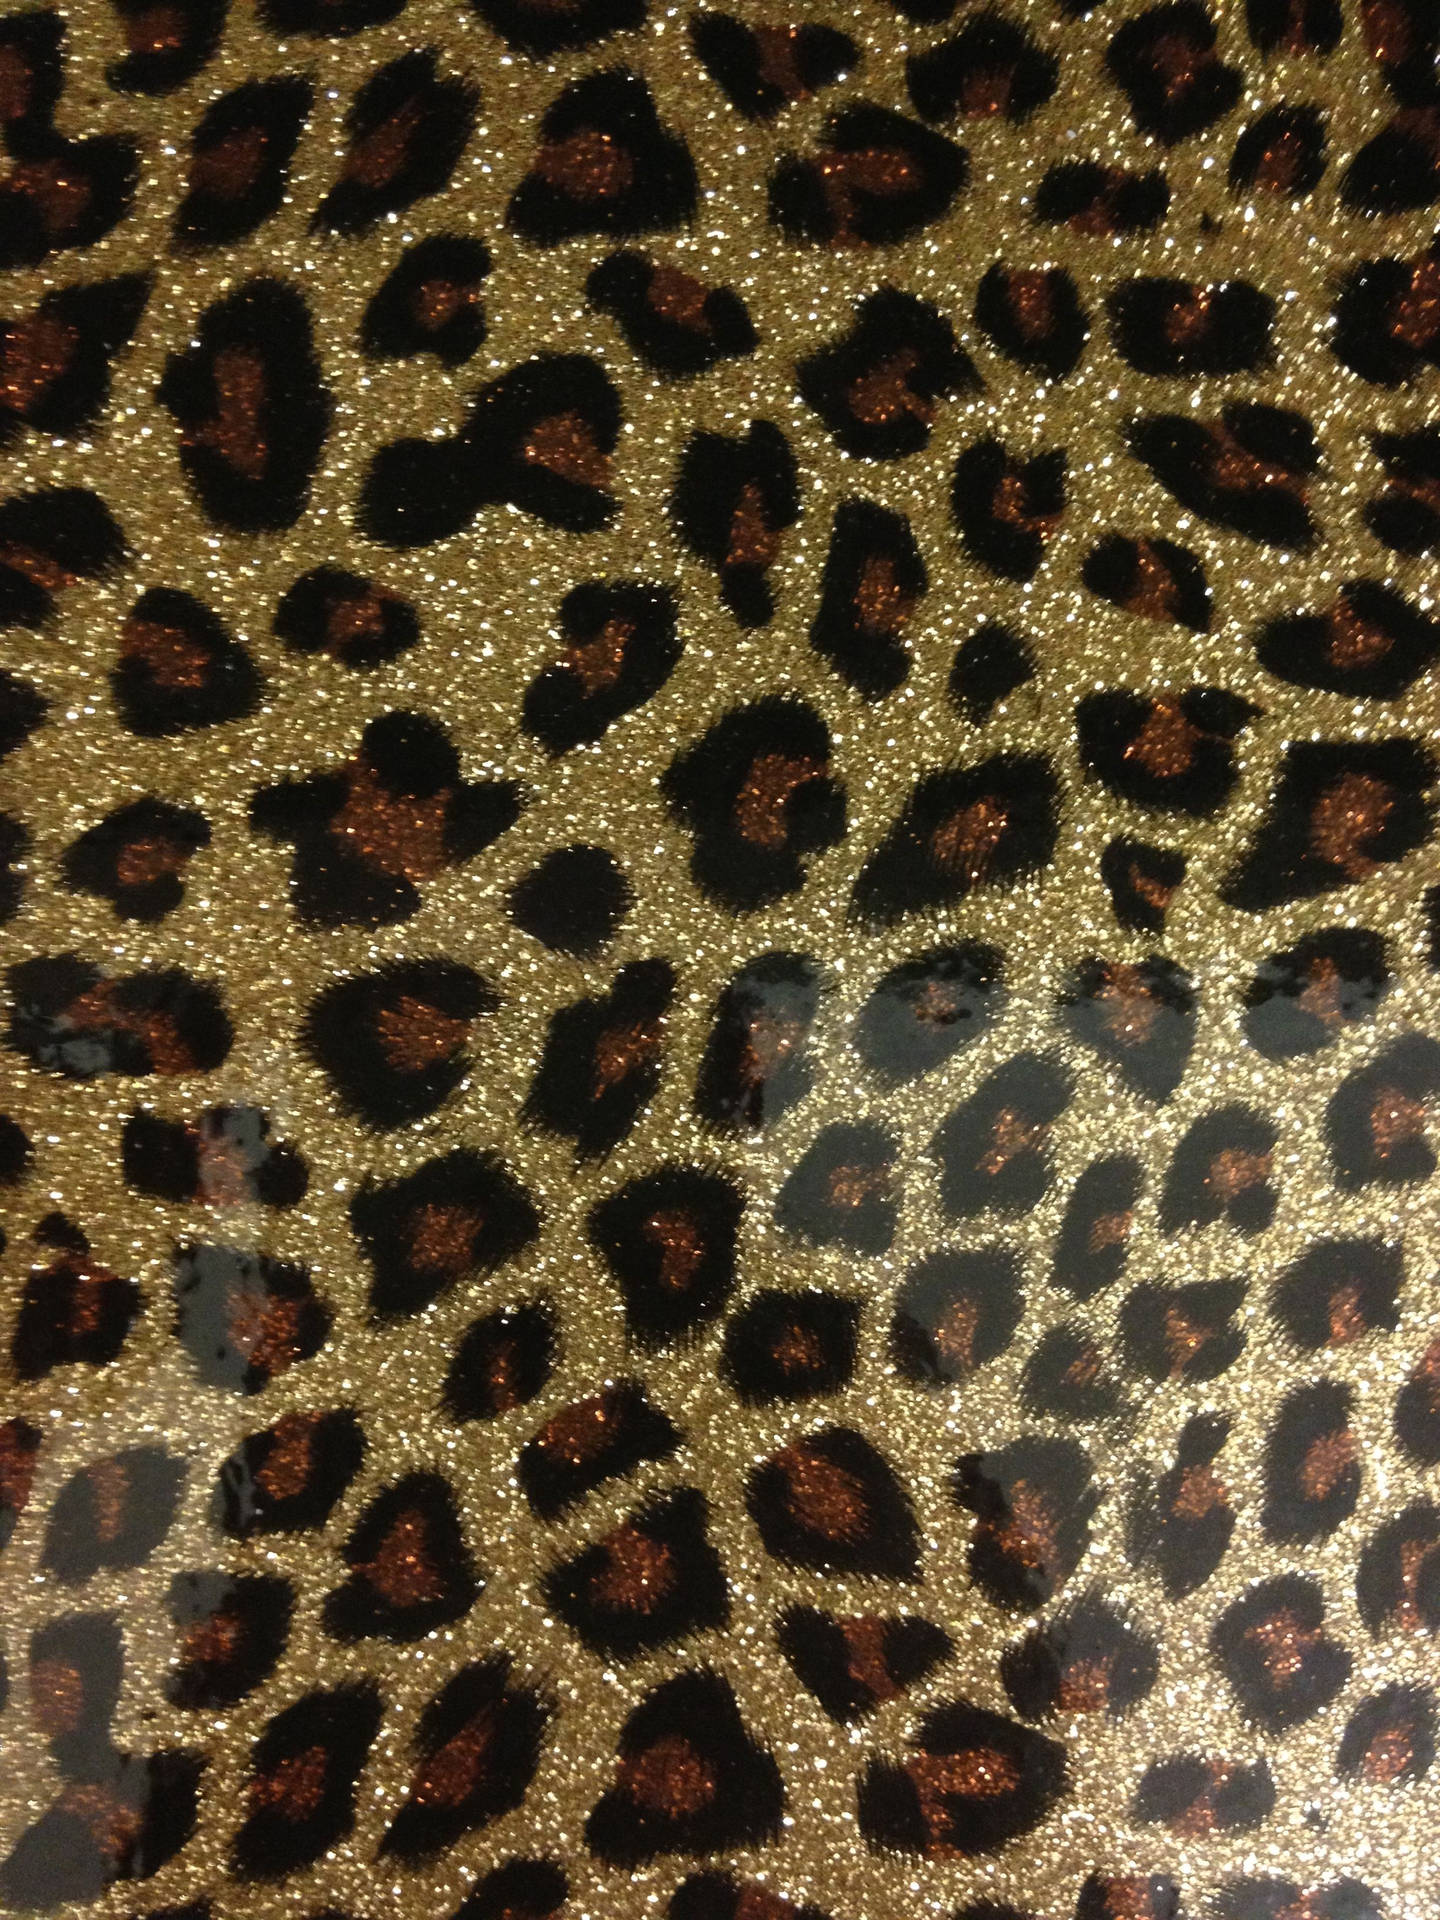 Cheetah Iphone Wallpapers